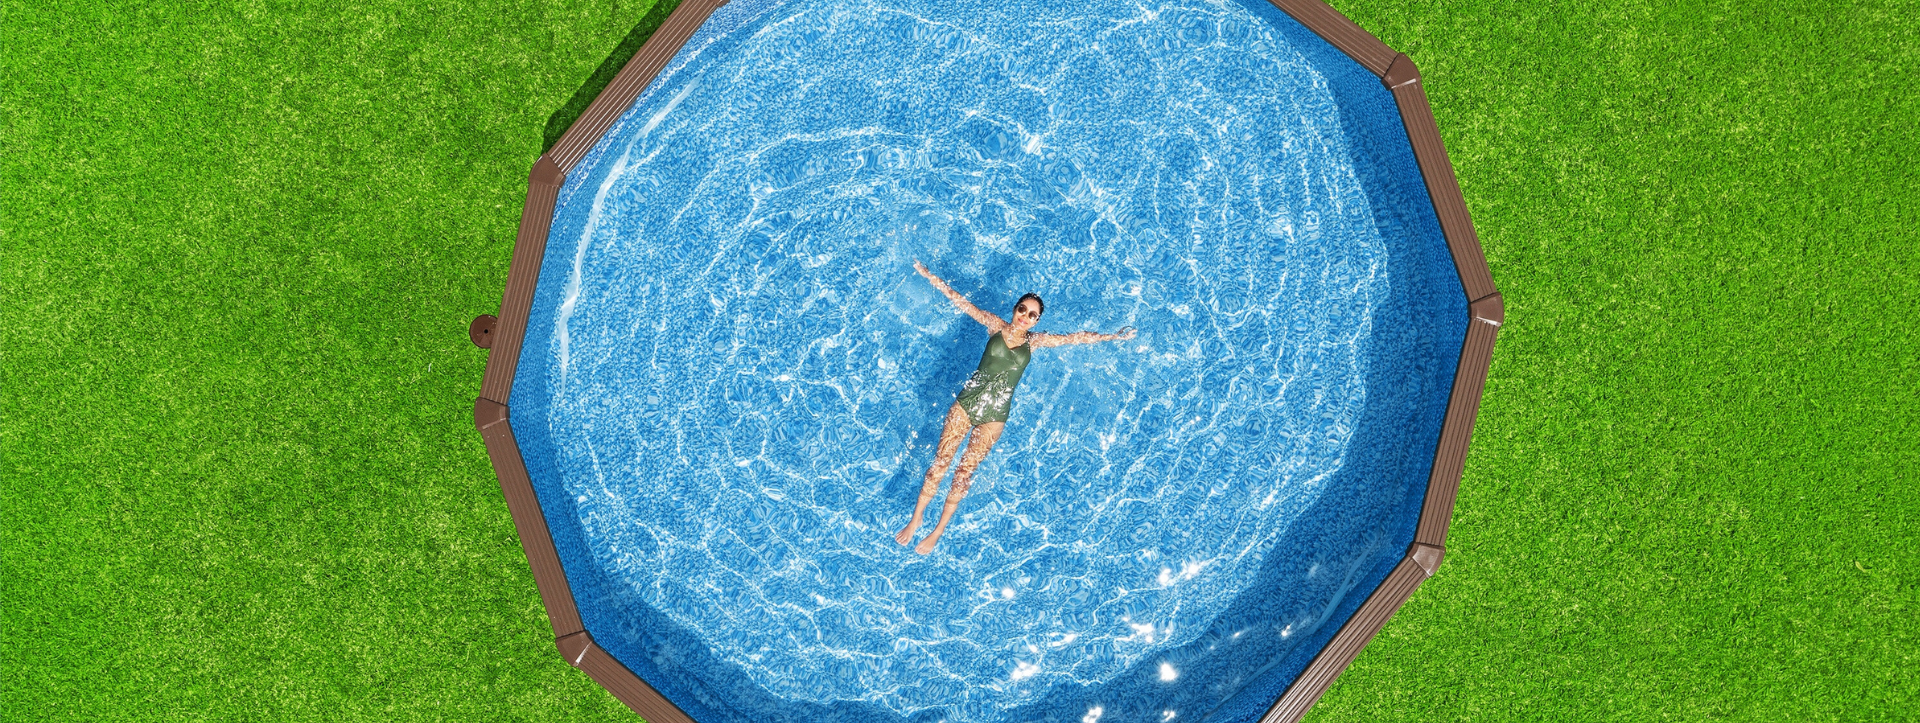 Installer une piscine Hydrium™ : guide et bonnes pratiques